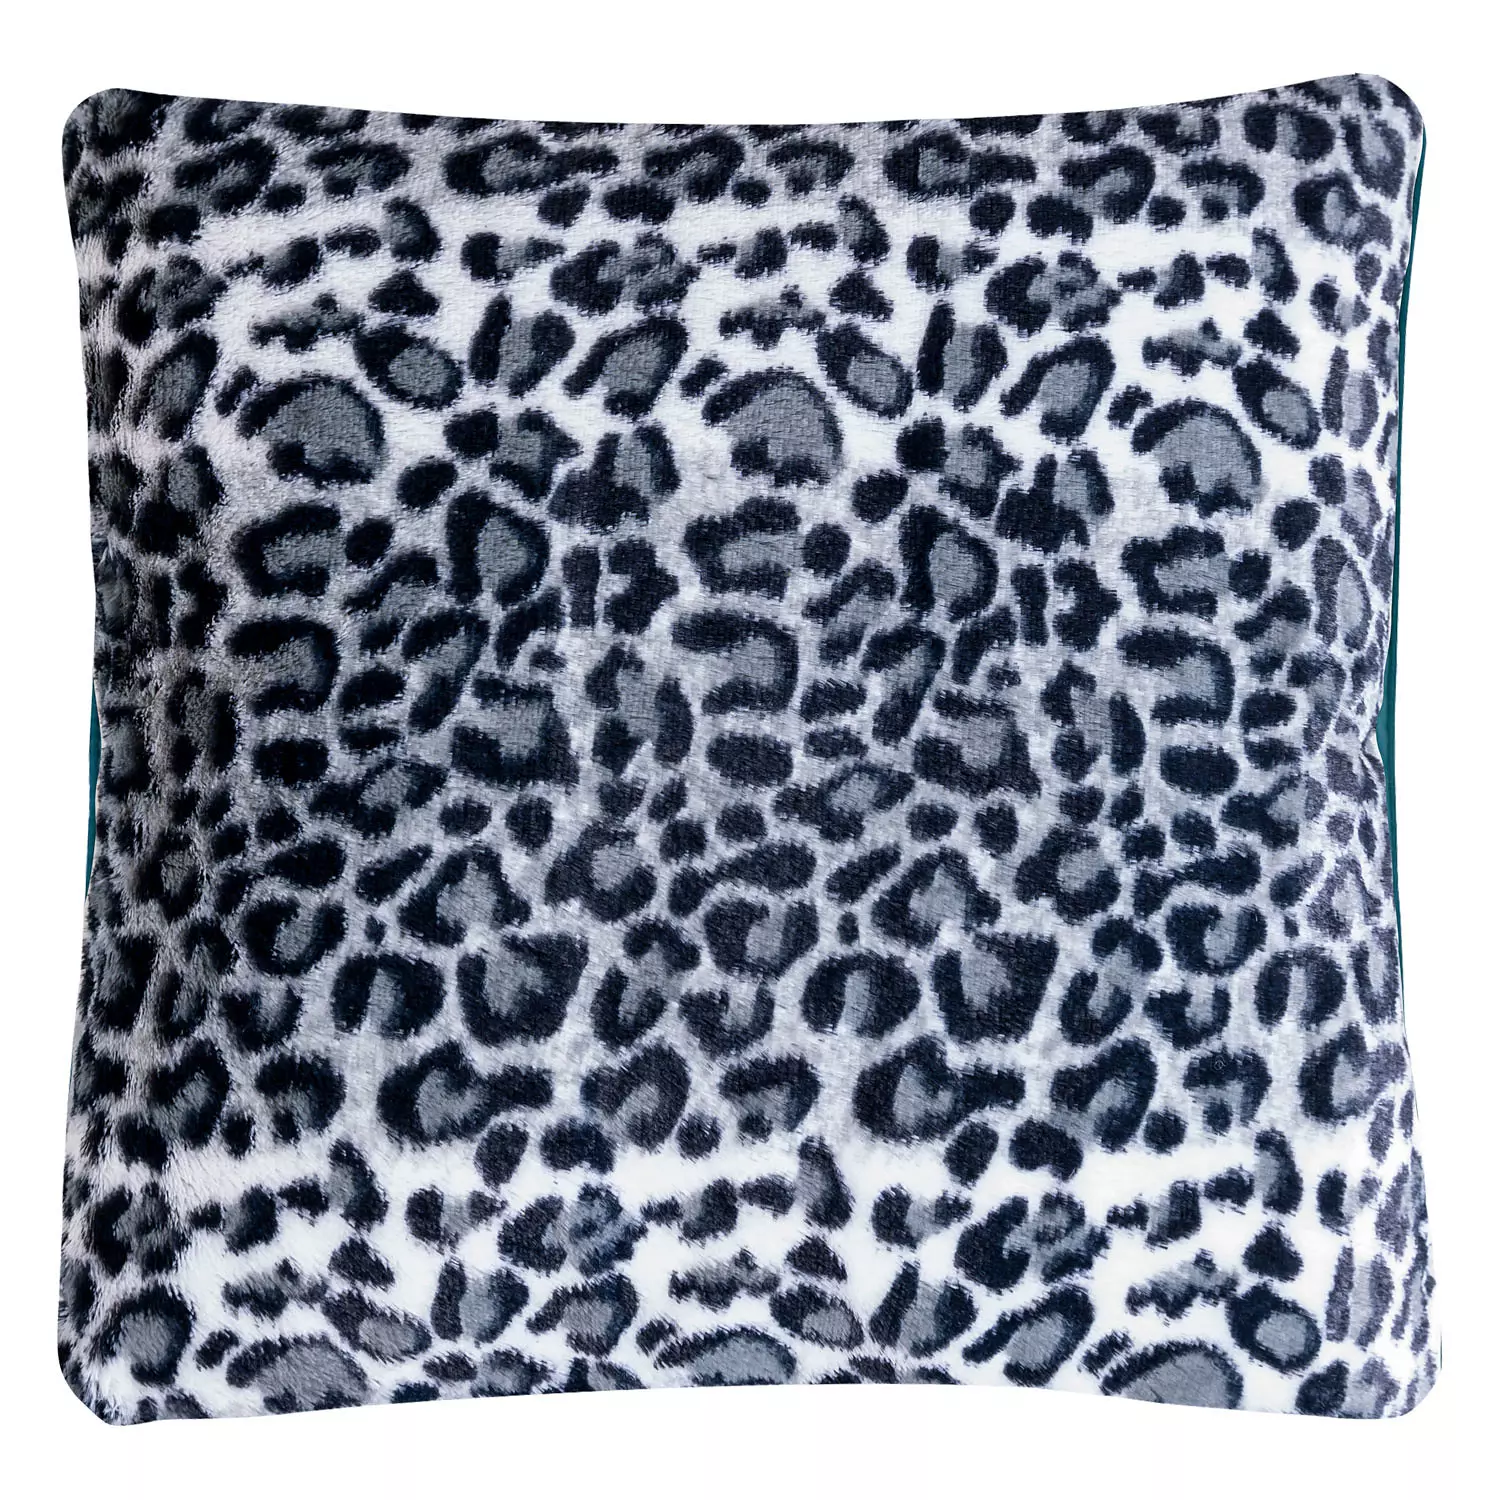 Soft plush cheetah print decorative cushion, 18"x18", grey